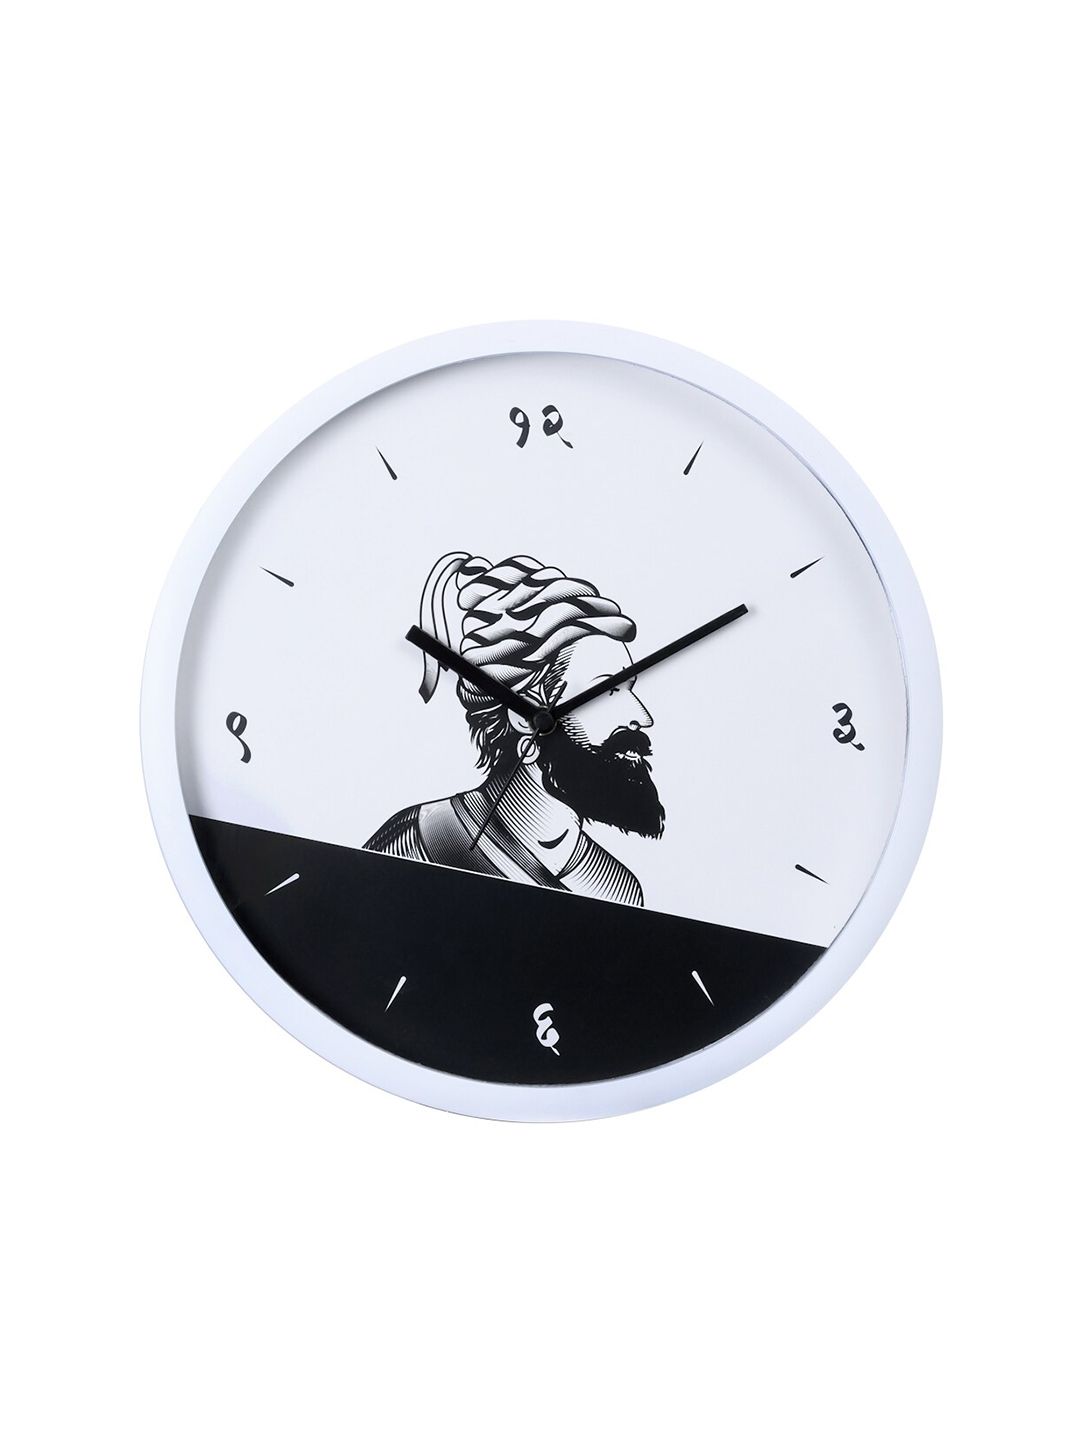 Bodh Design White & Black Printed Contemporary Wall Clock Price in India